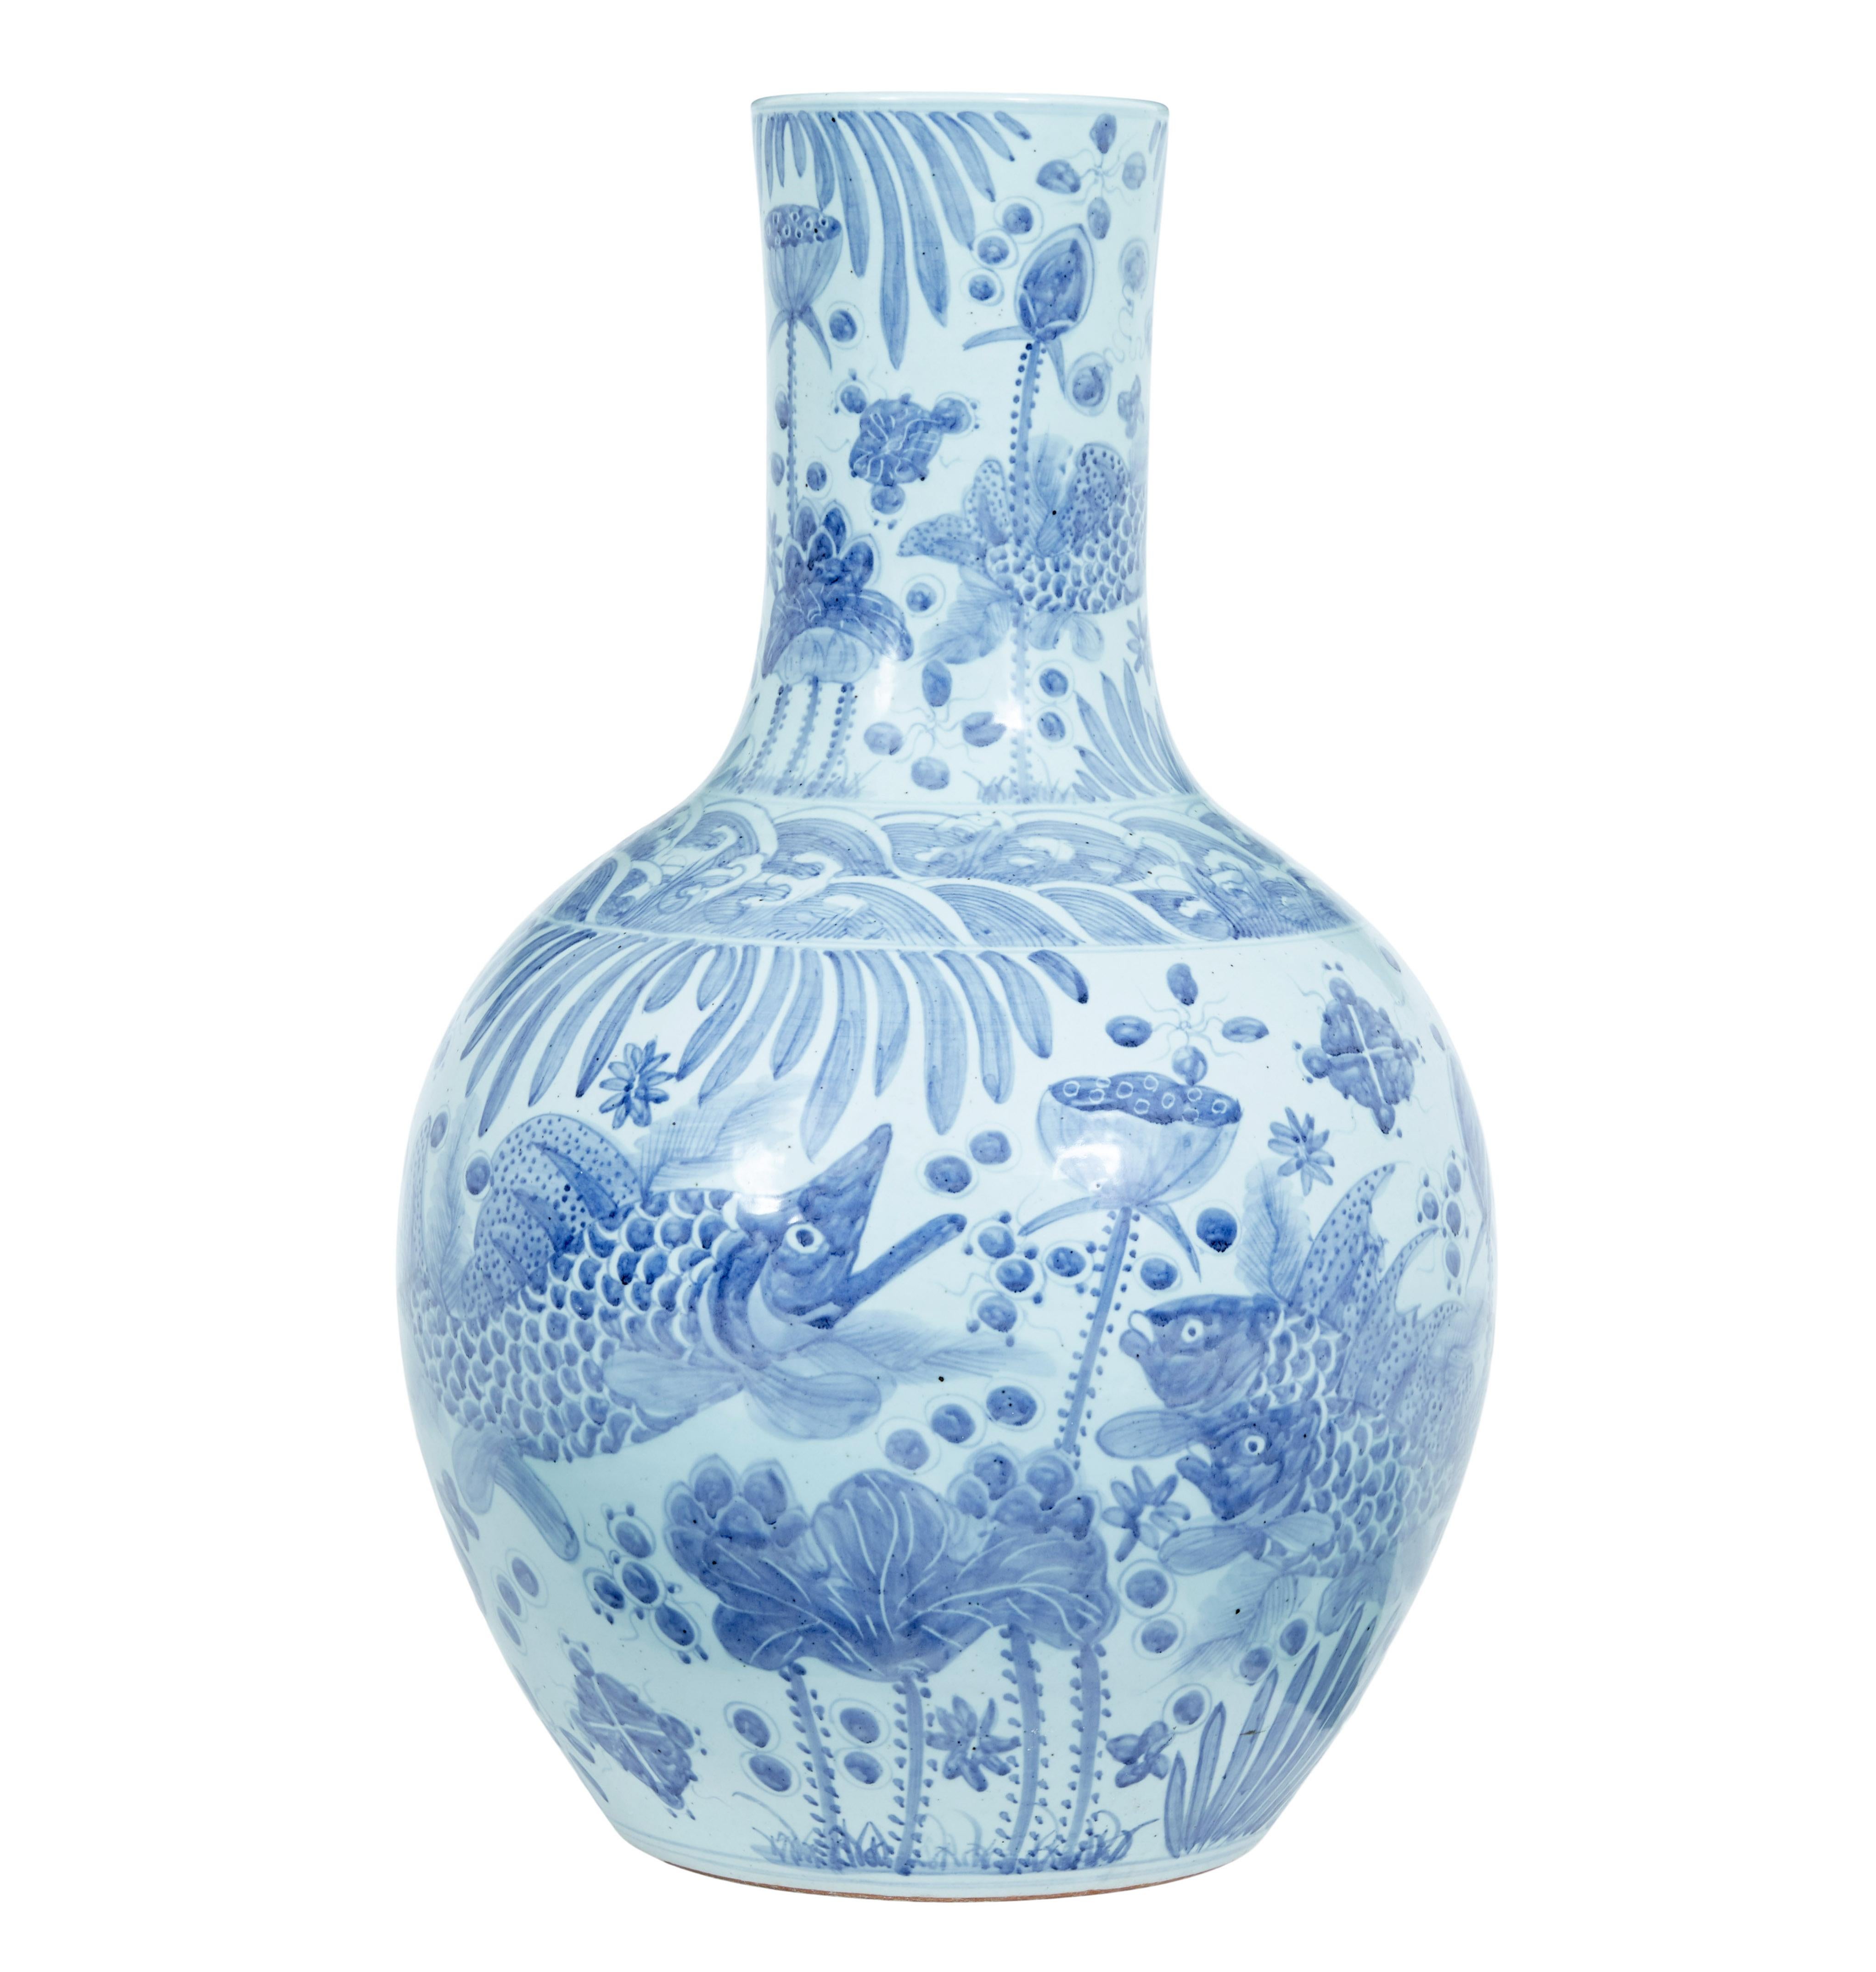 Large Decorative Blue and White Ceramic Chinese Vase 1